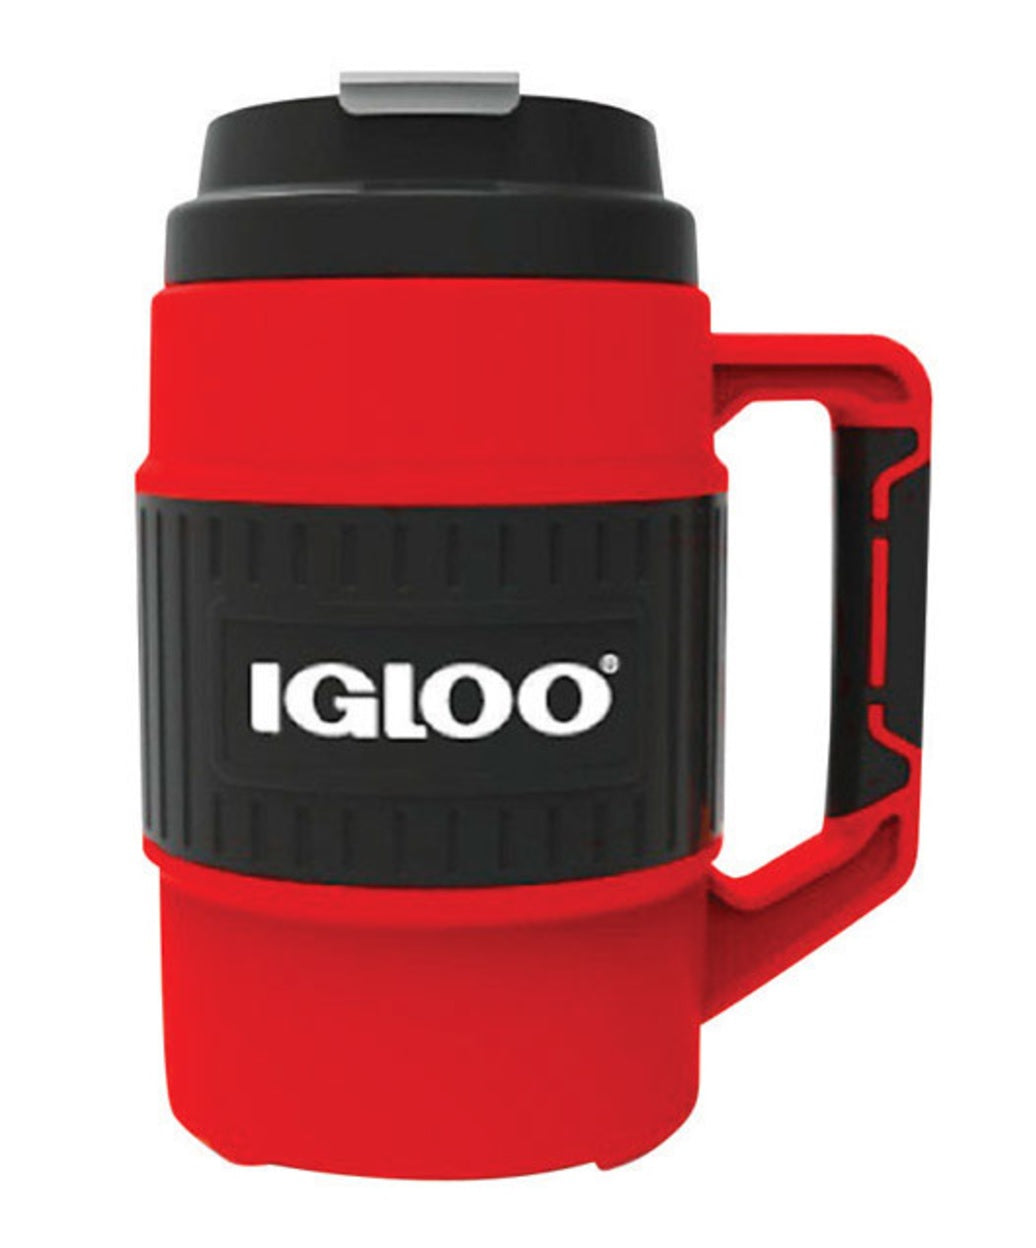 Igloo 31021 Insulated Mug, 1/2 gallon, Red